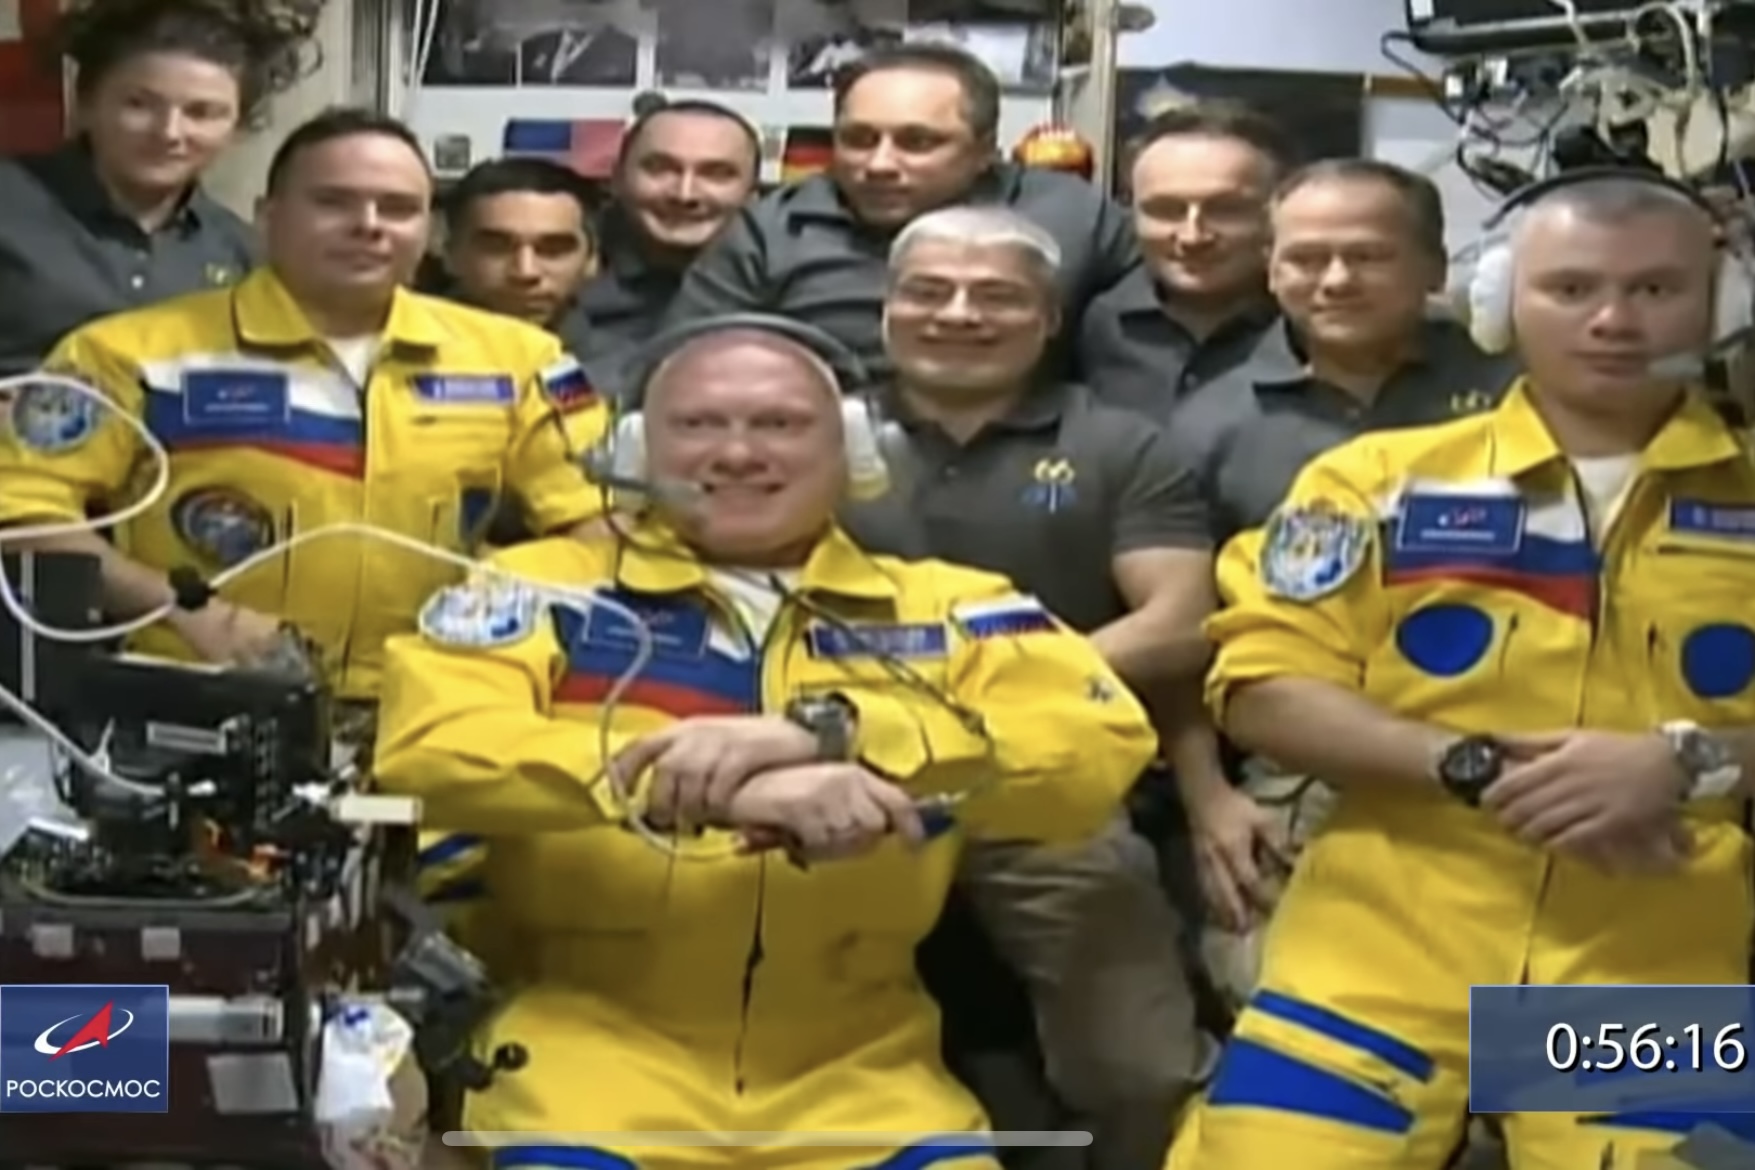 Entenda por que cosmonautas russos usaram as cores da Ucrânia na Estação Espacial